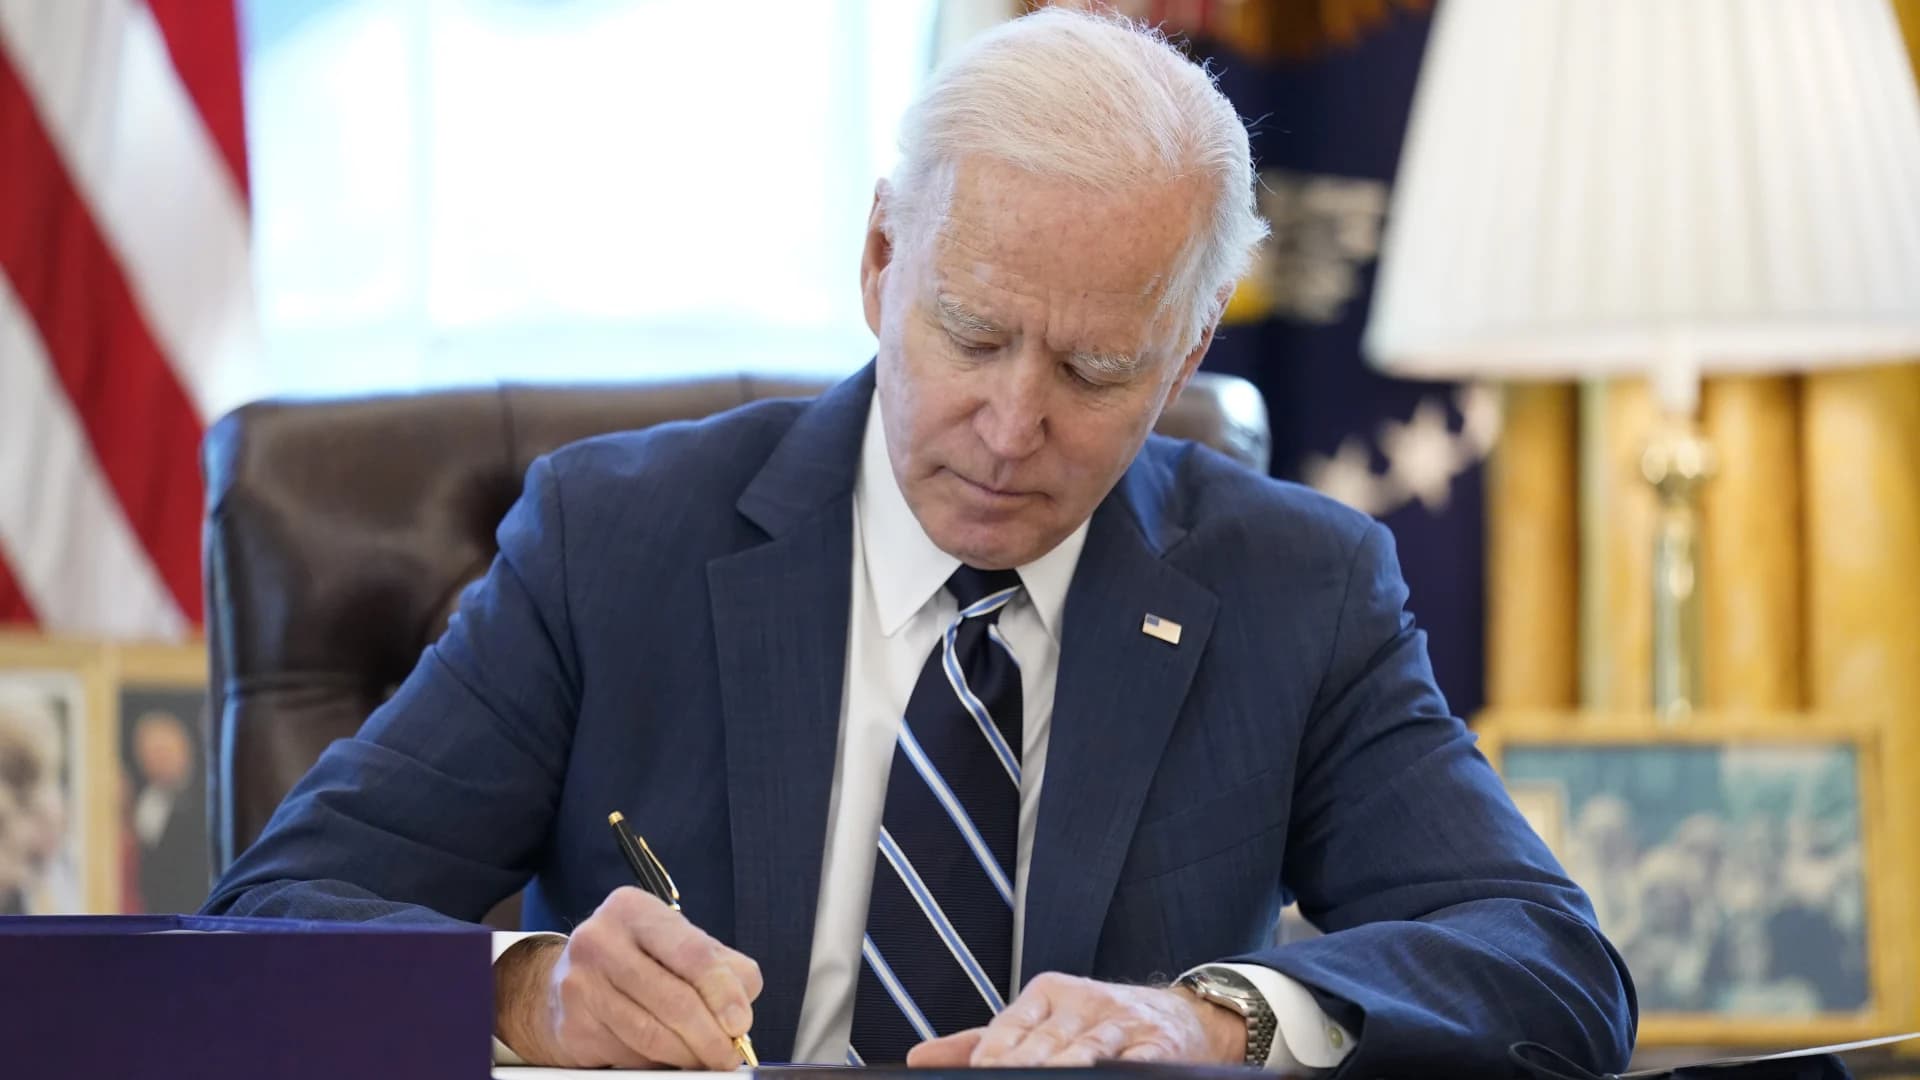 AP sources: Biden to sign policing executive order